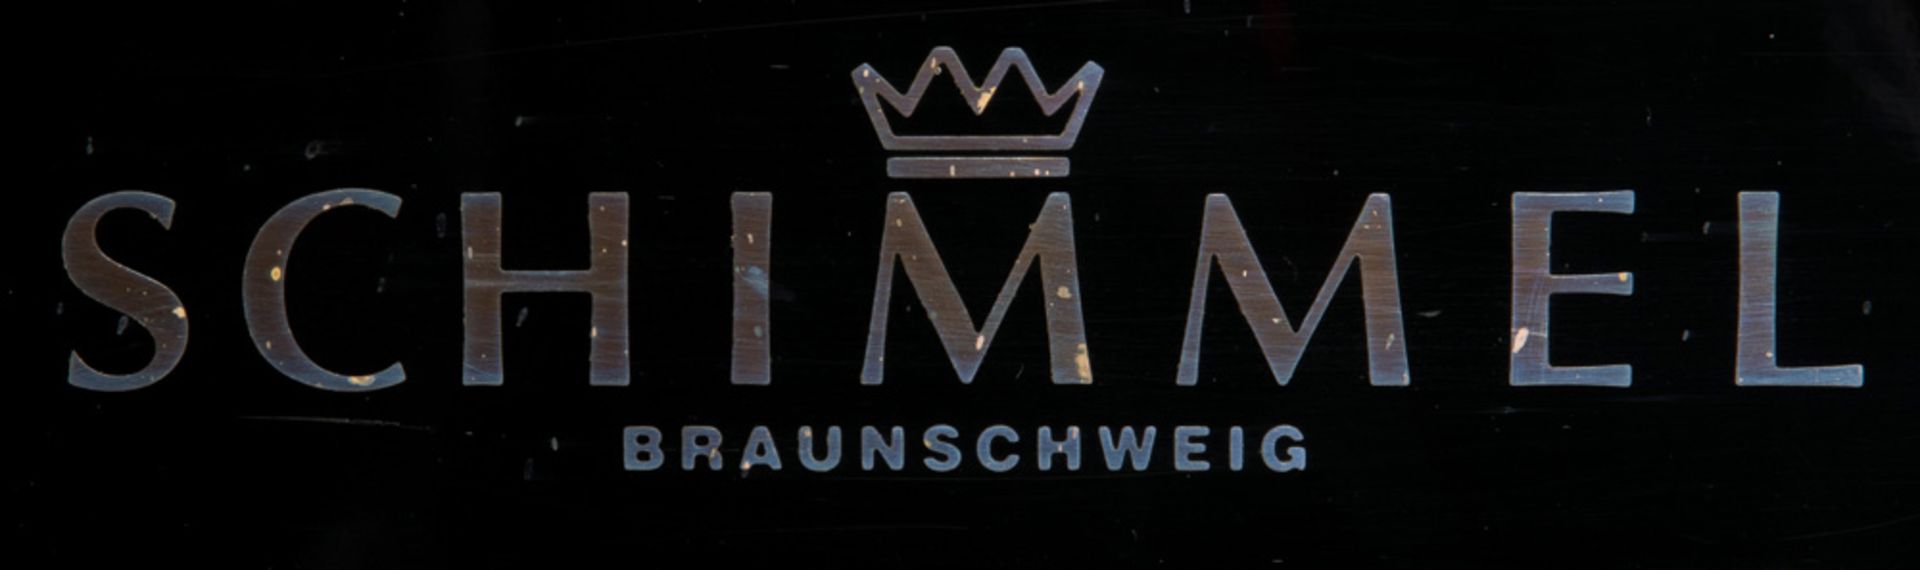 Hochwertiger Schimmel-Flügel 174 T mit Sitzbank. Nikolaus Wilhelm Schimmel, Braunschweig, um 1975- - Image 2 of 5